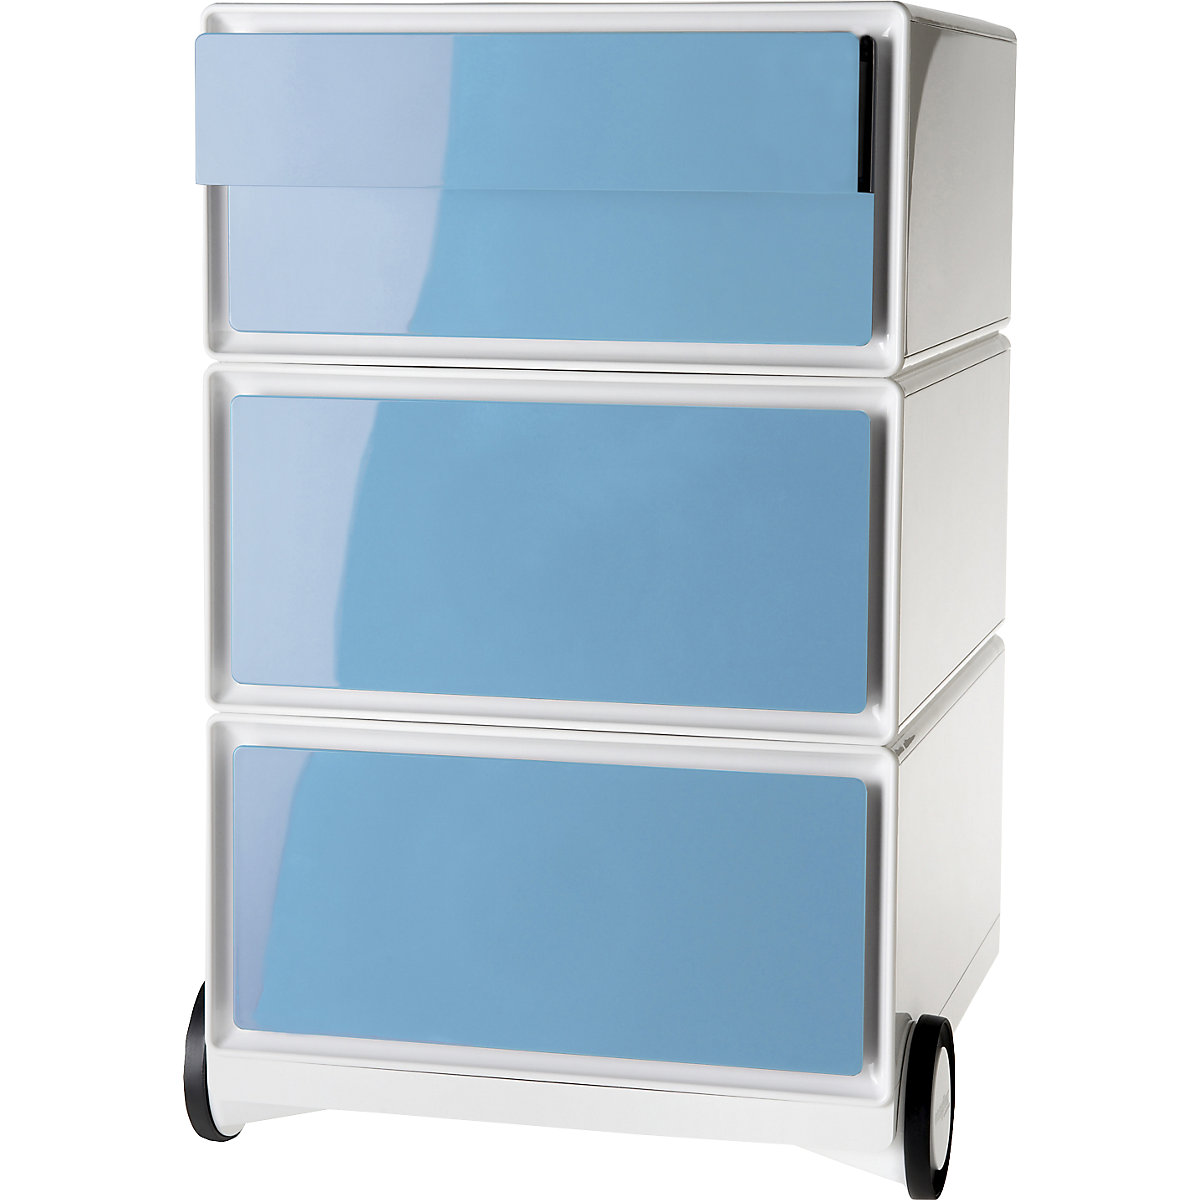 Pomični predalnik easyBox® – Paperflow, 2 predala, 2 nižja predala, bele / modre barve-12